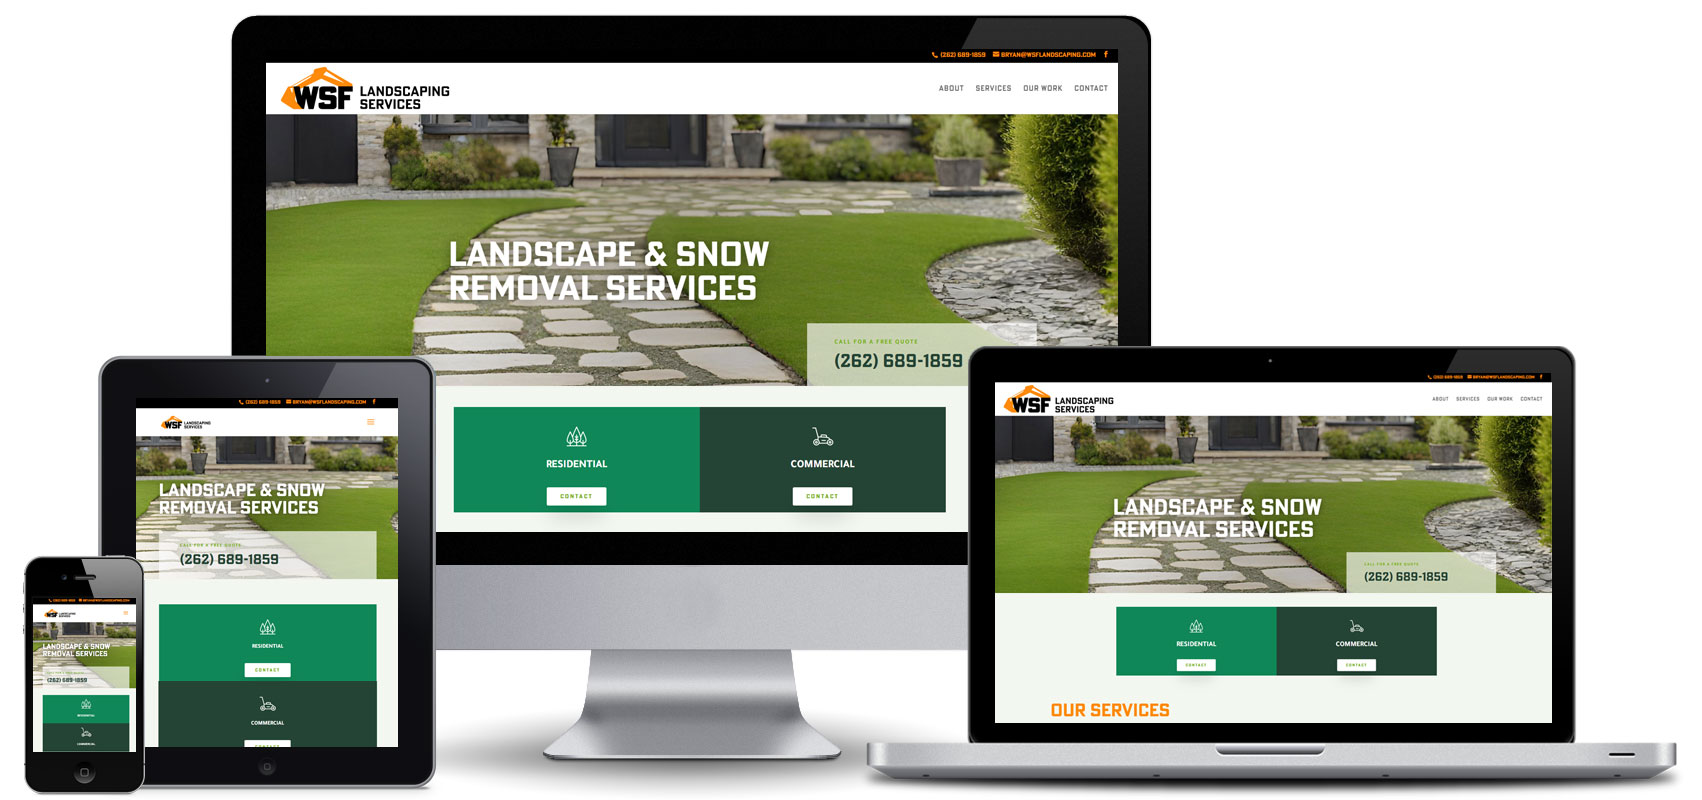 wsf landscaping website design